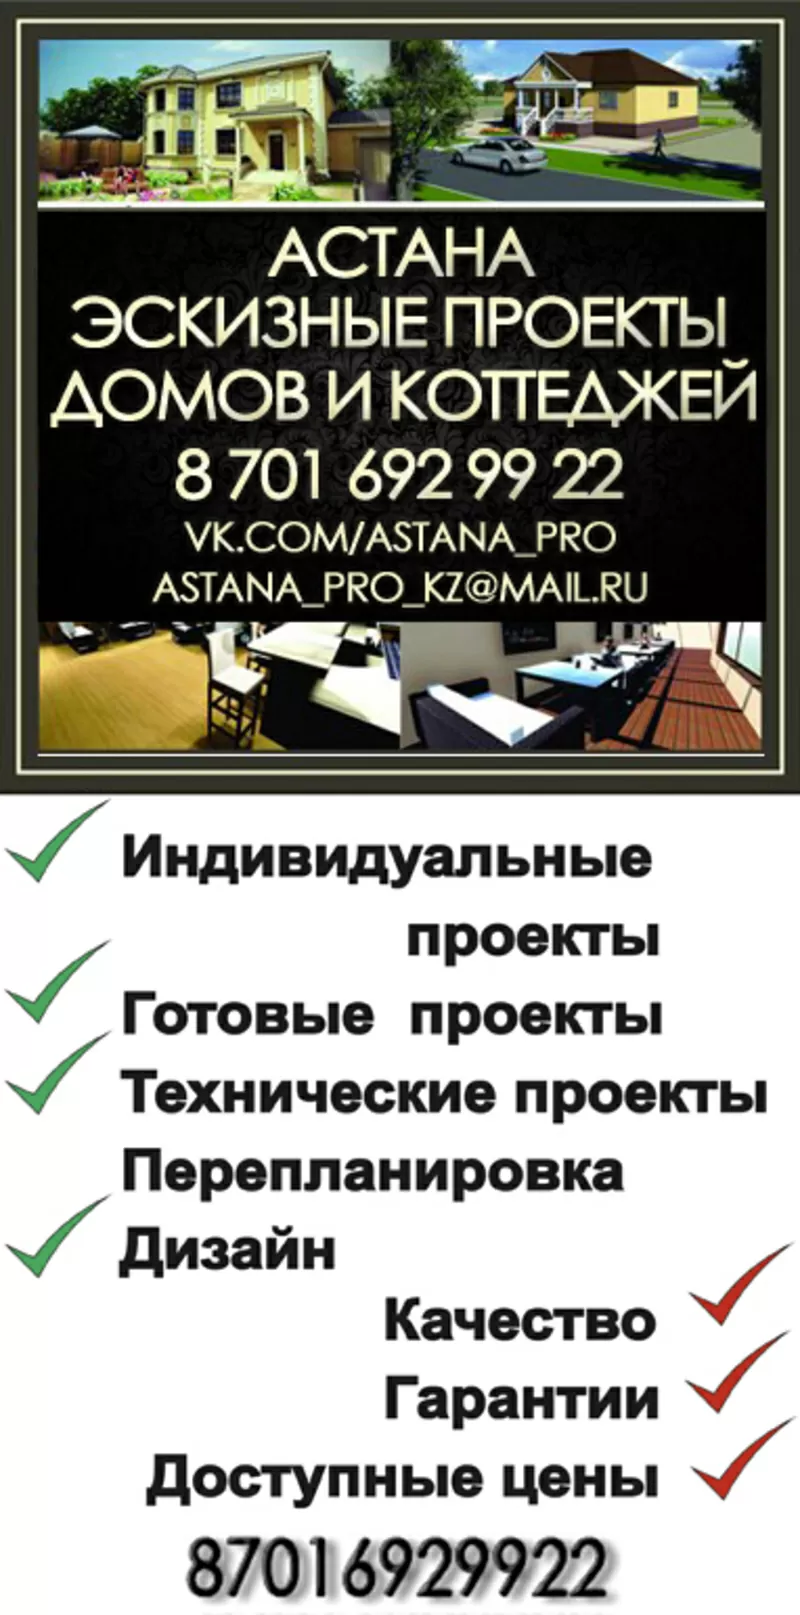 Технический проект,  перепланировка (лицензия)недорого, быстро!Астана